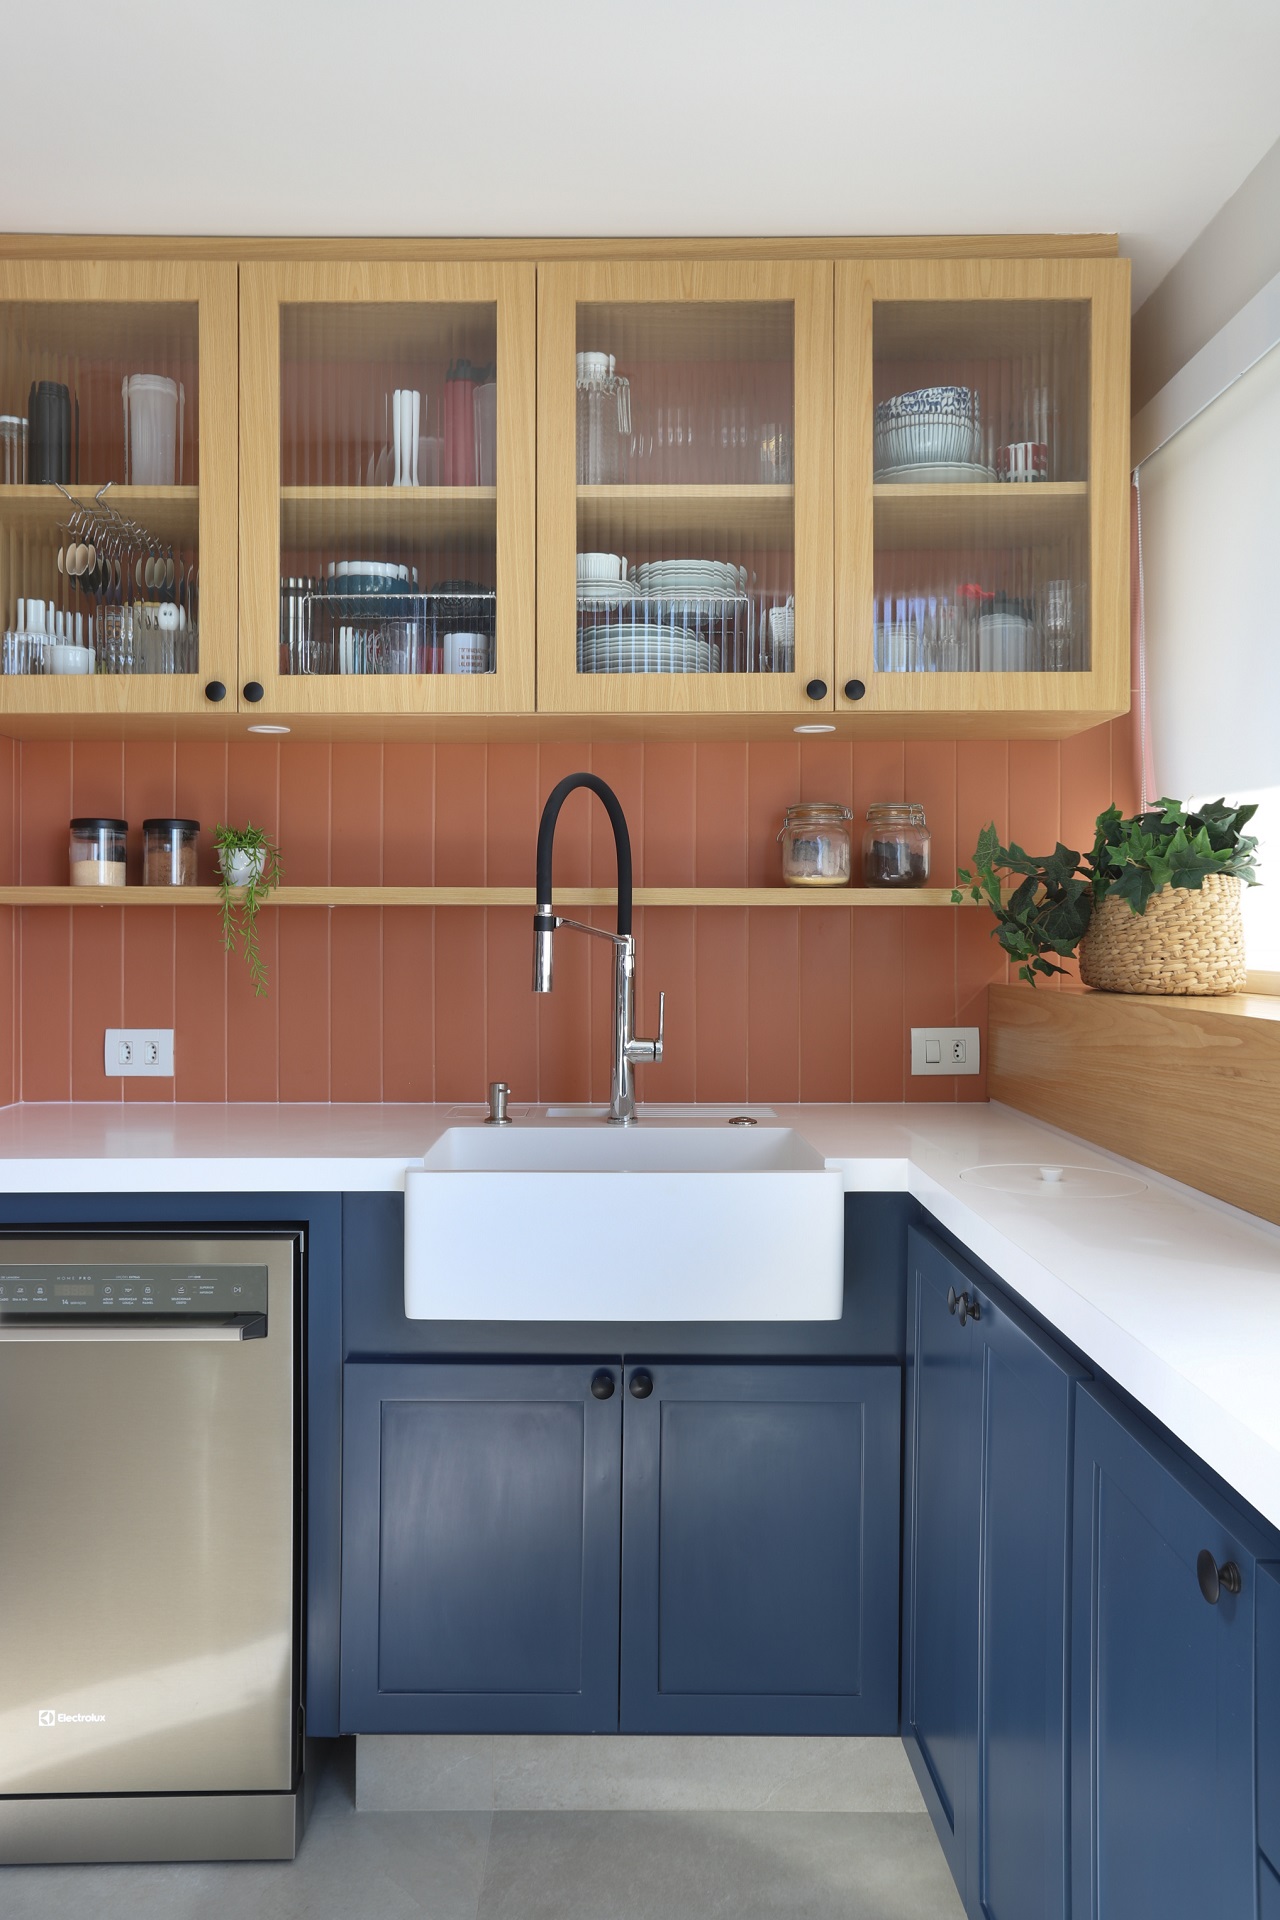 Cozinha com armários em madeira e azul; bancada branca; e backsplash laranja